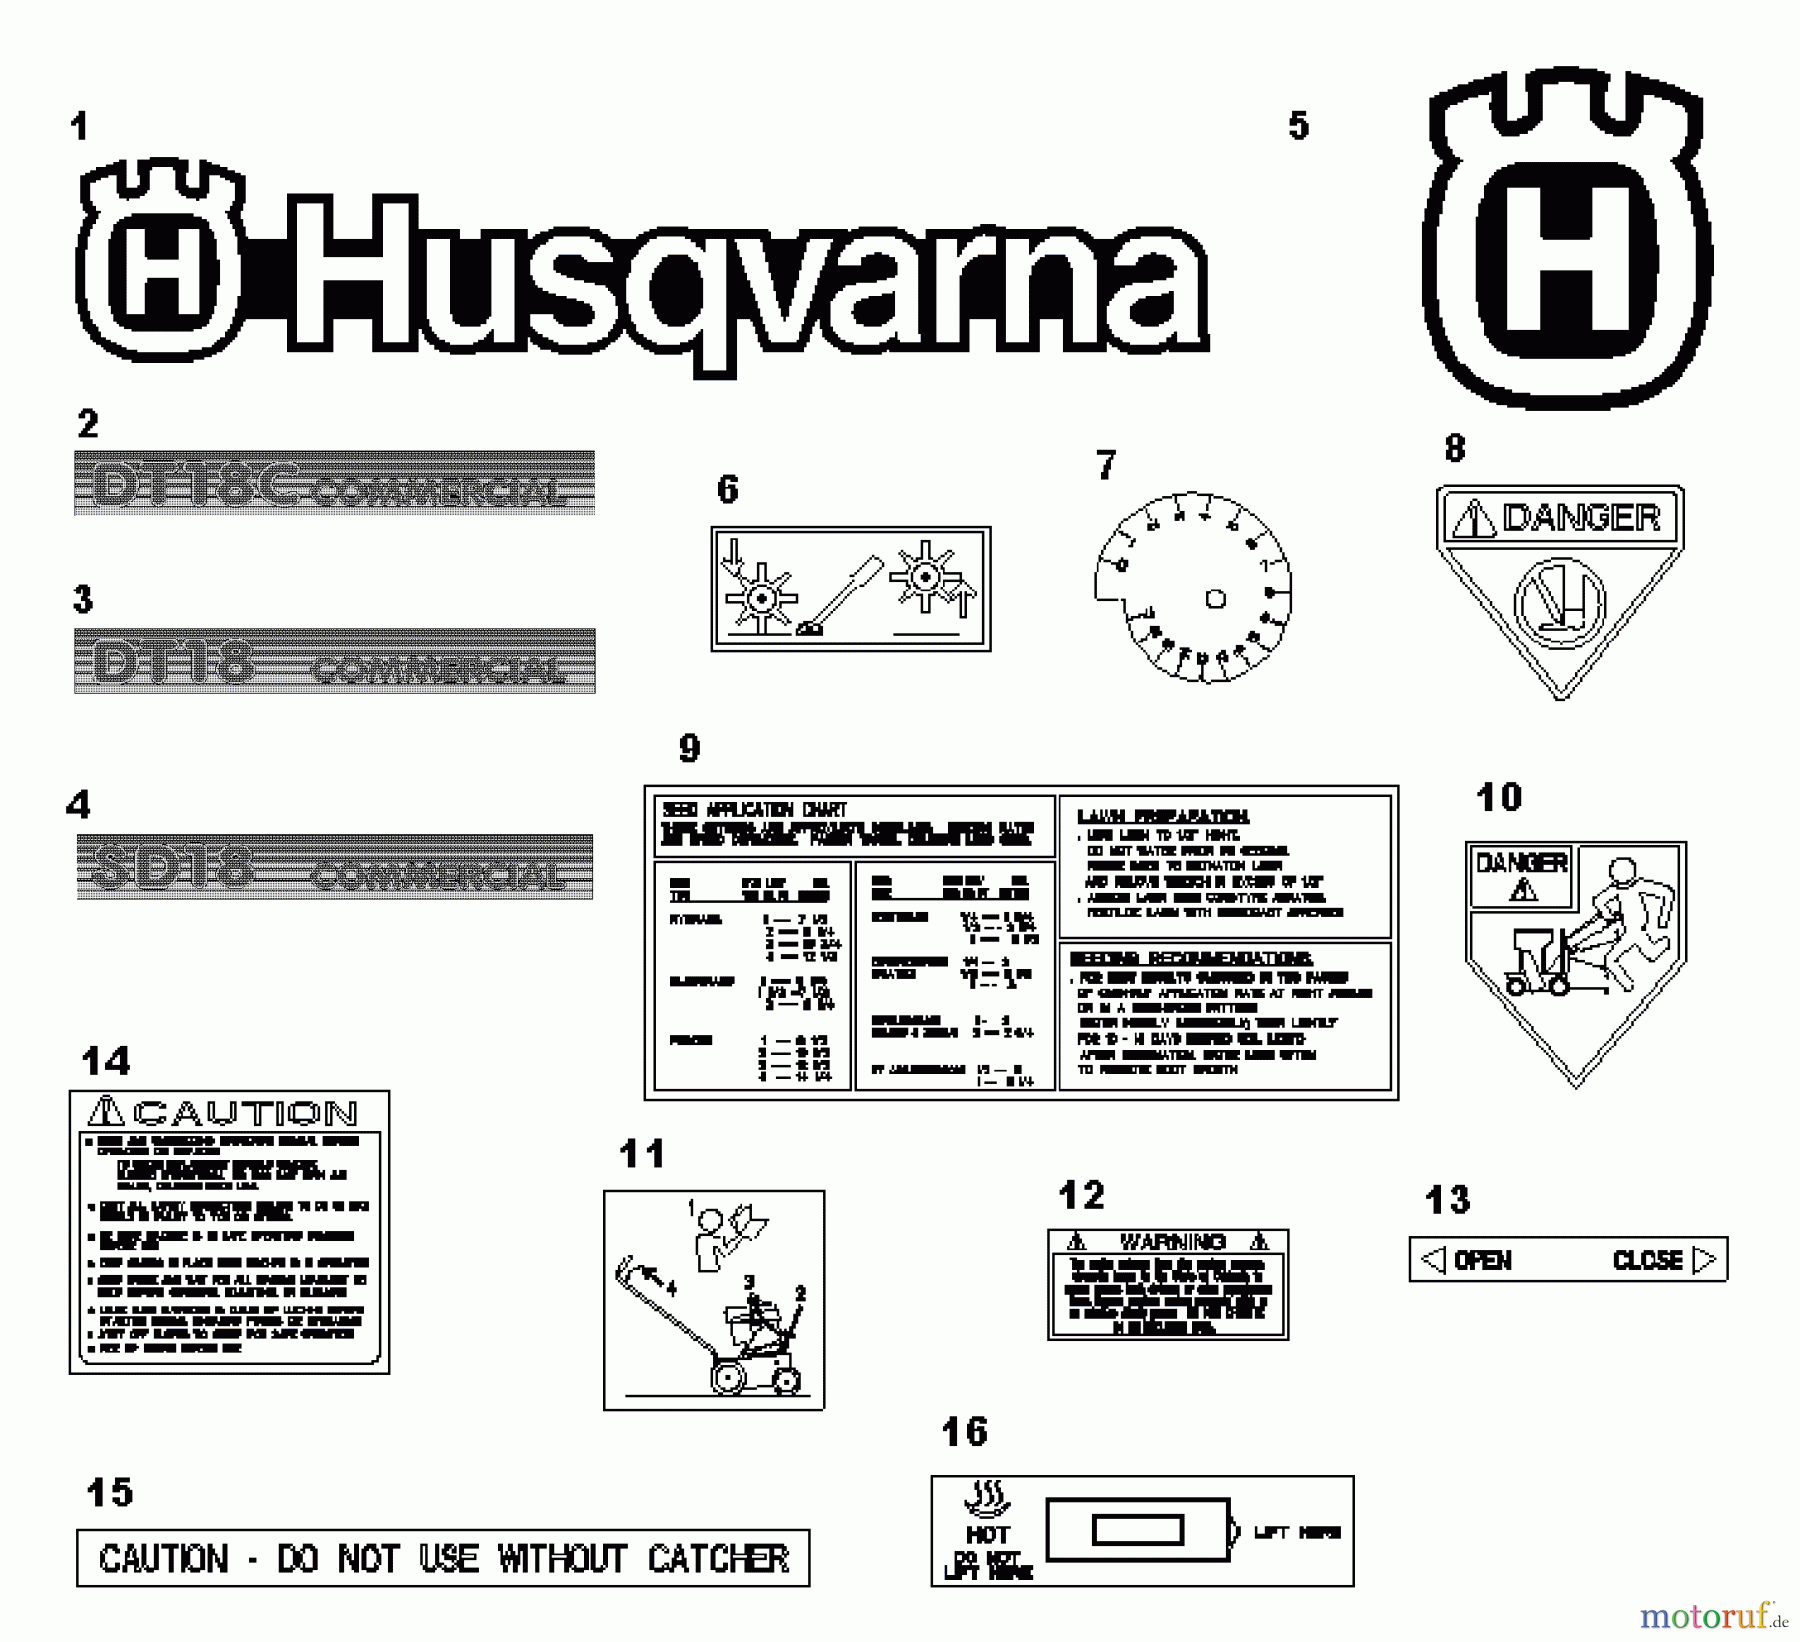  Husqvarna Belüfter / Vertikutierer / Rechen SD 18 (968981010) - Husqvarna Dethatcher (2000-12 & After) Dethatcher / Seeder Decals